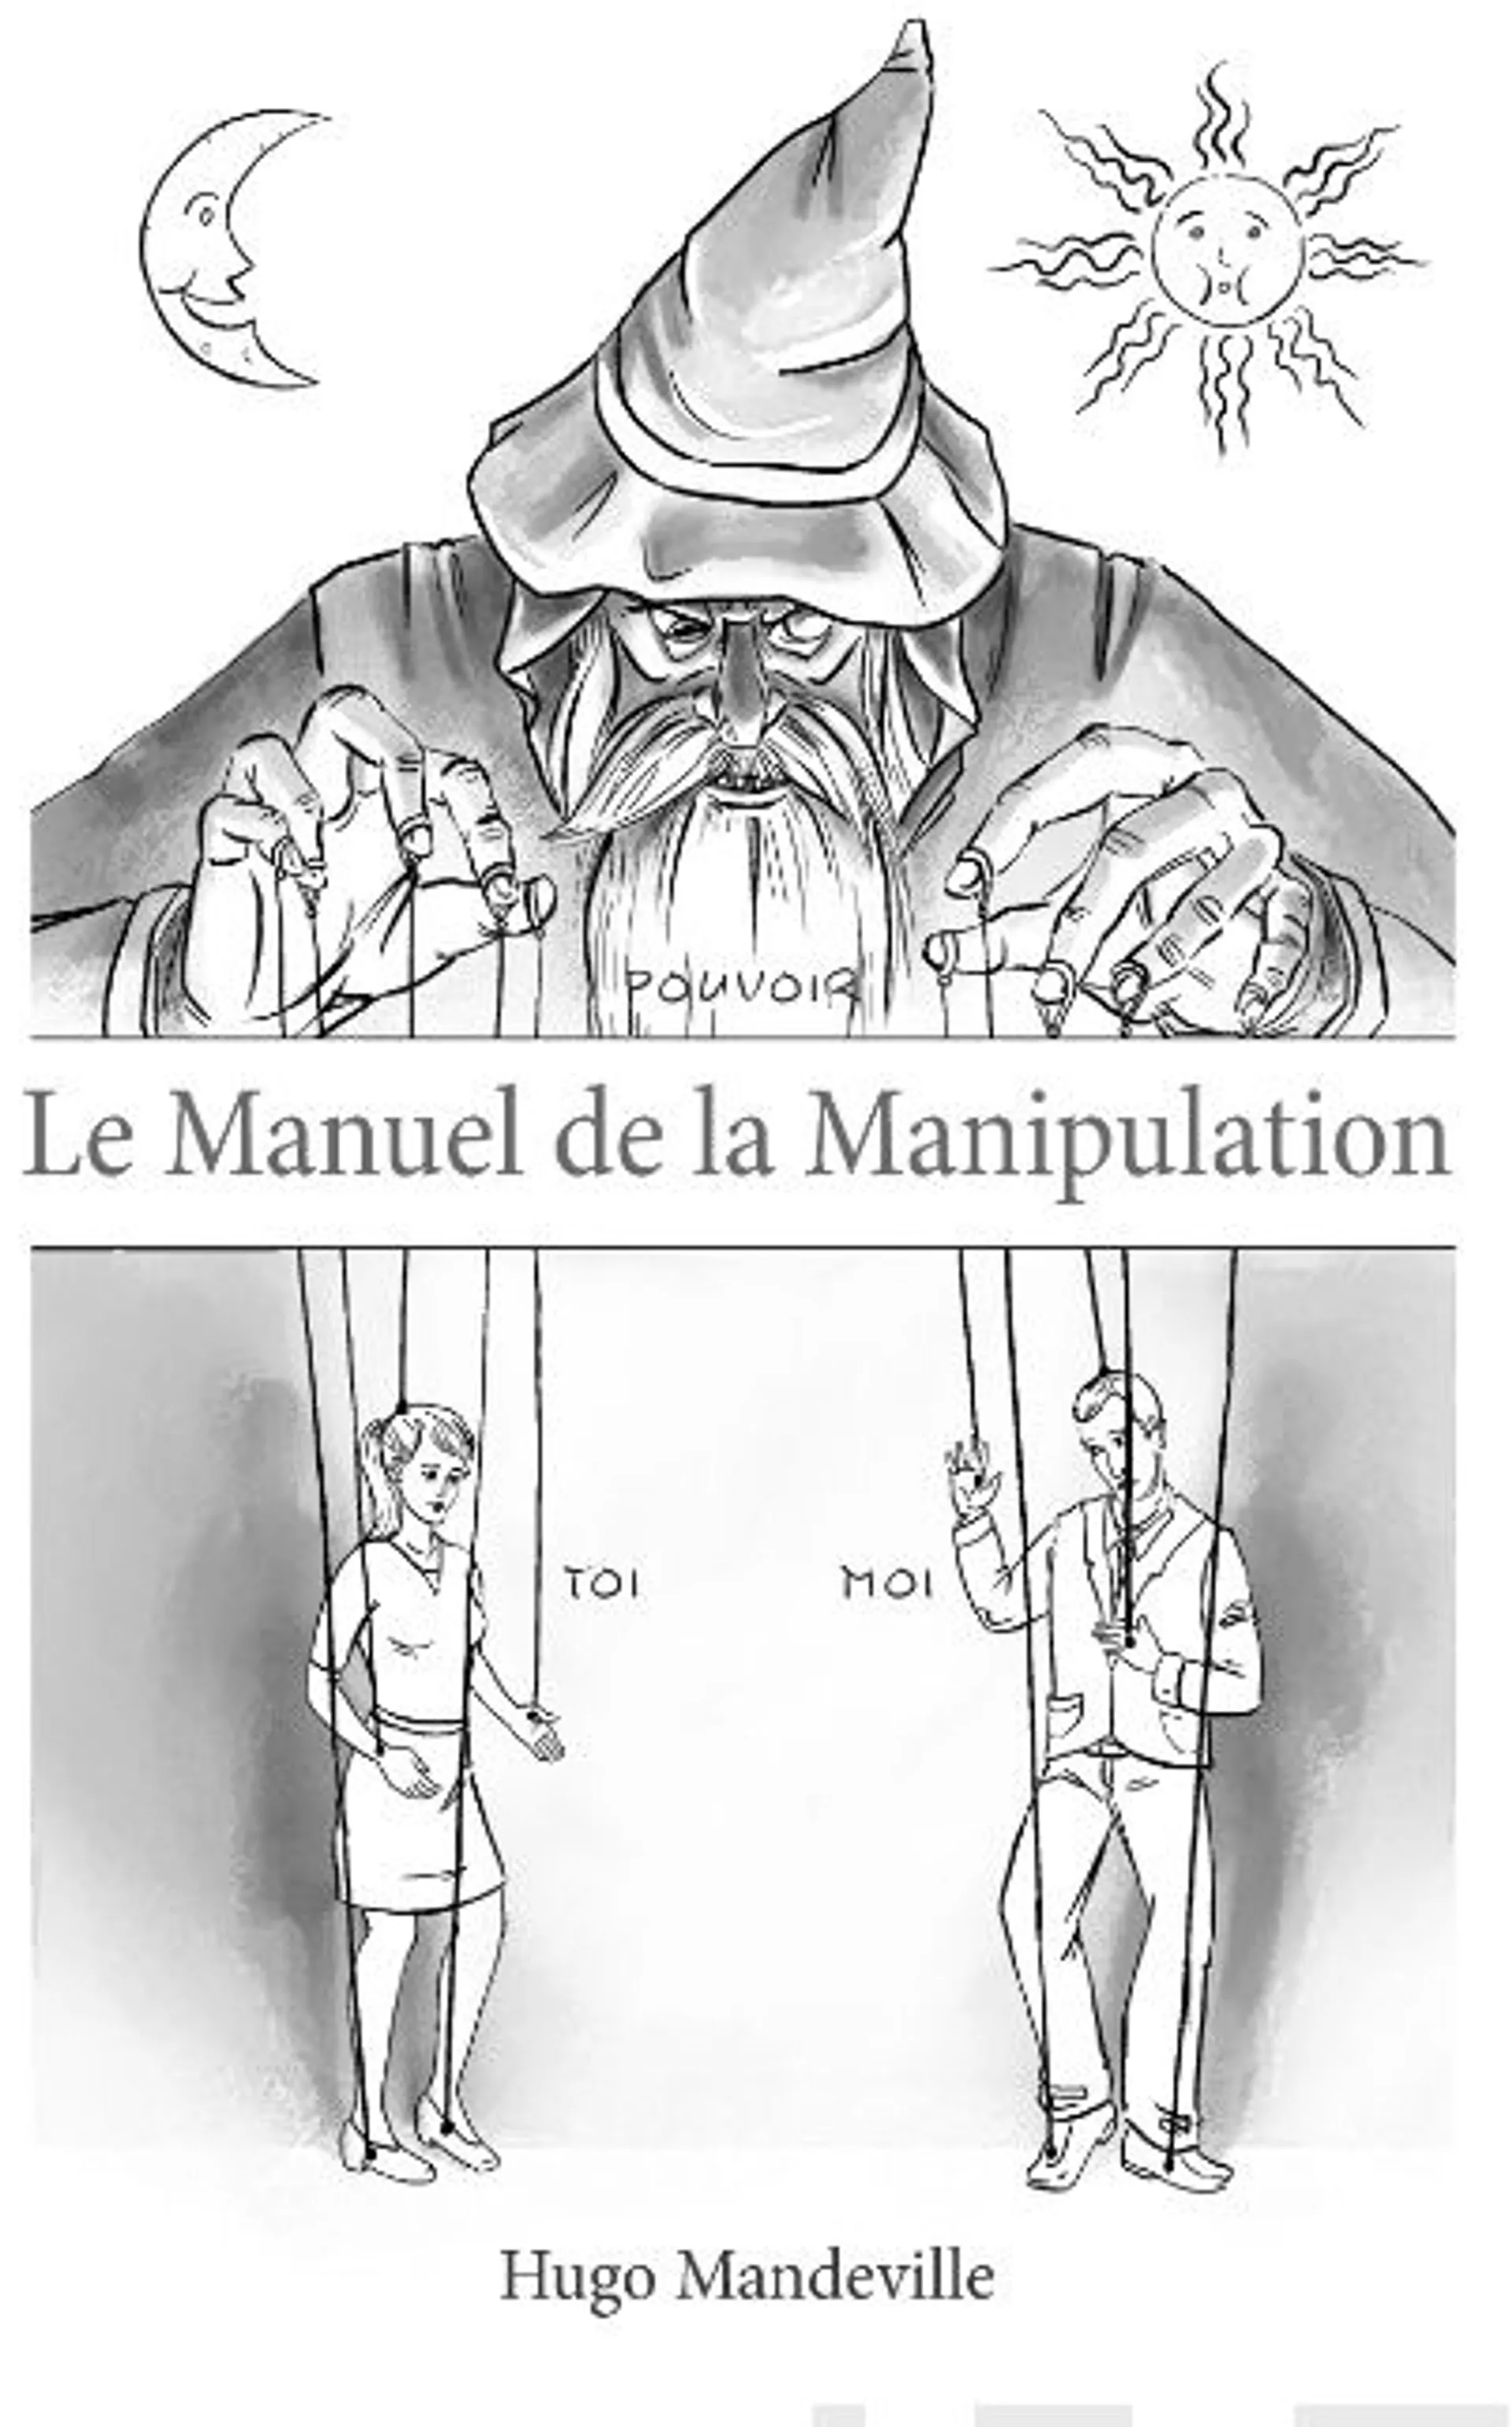 Mandeville, Le Manuel de la Manipulation